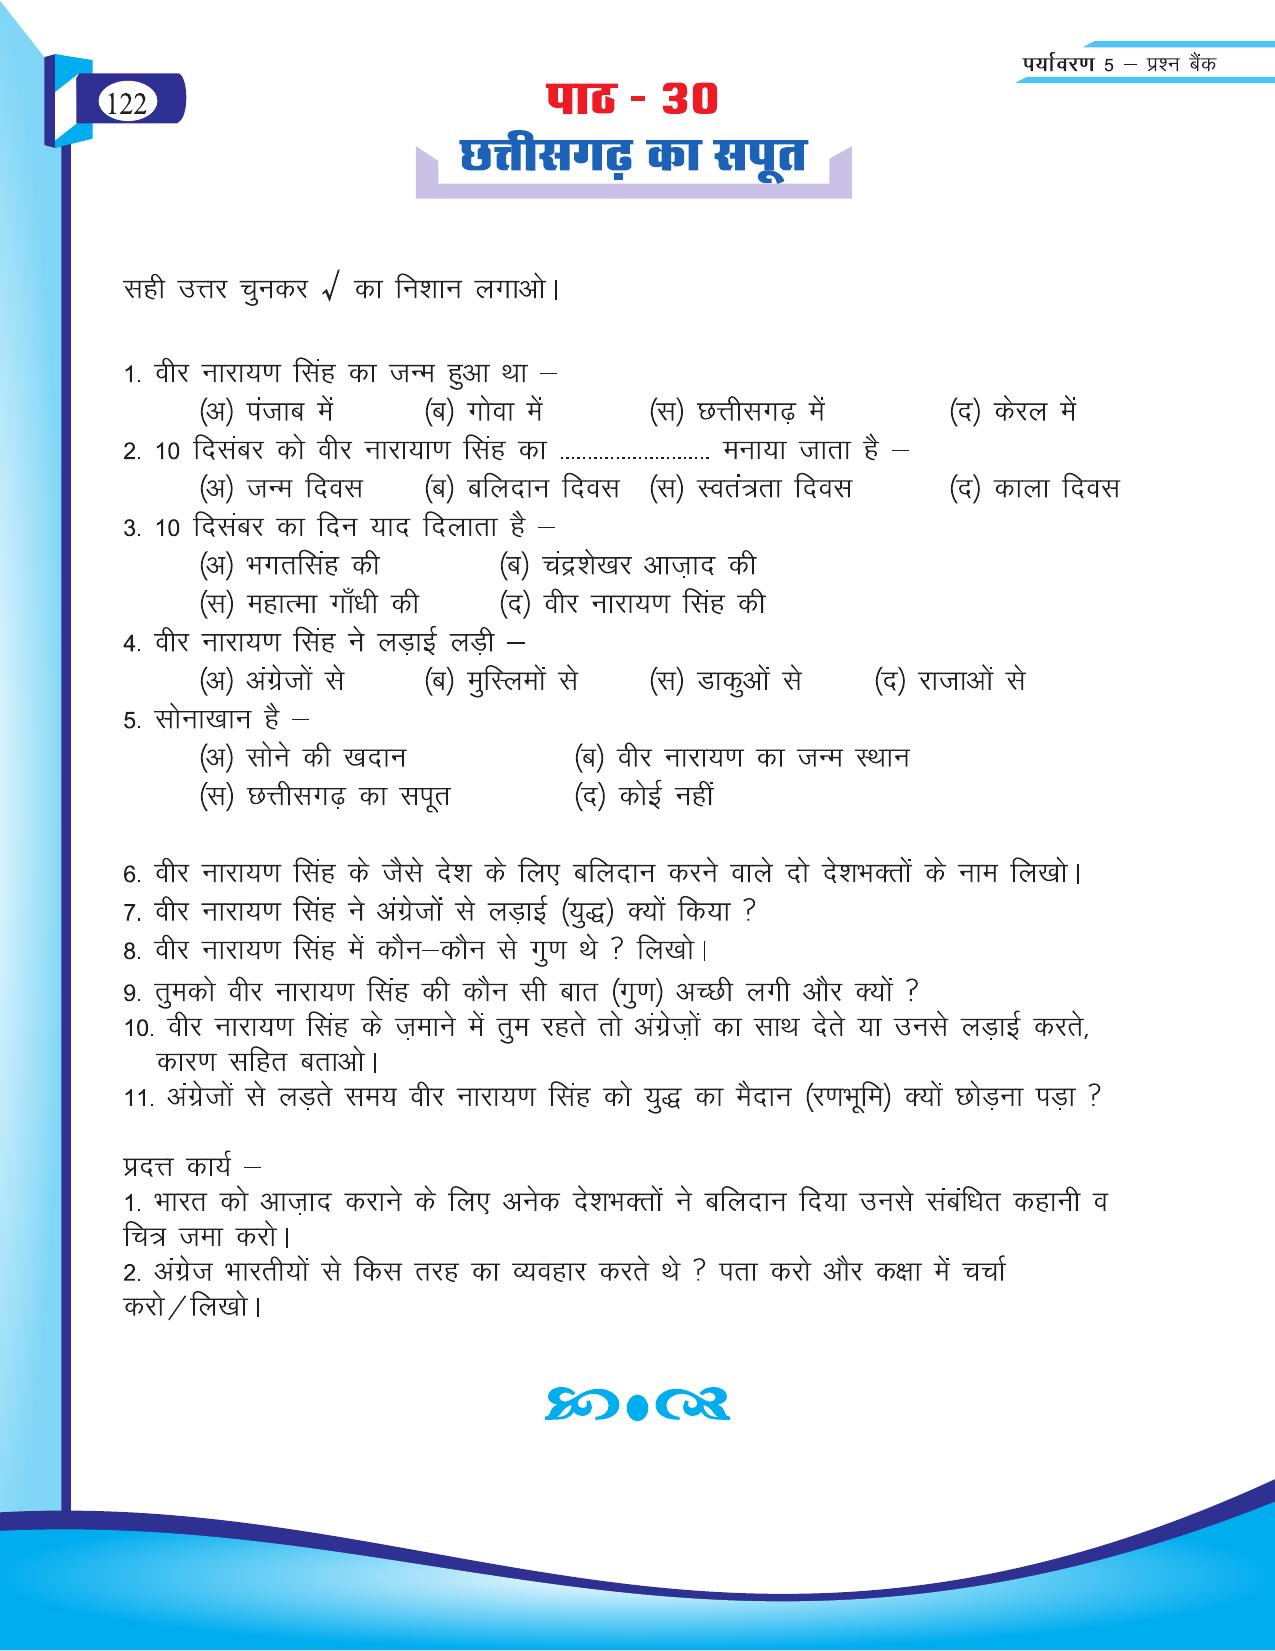 Chhattisgarh Board Class 5 EVS Question Bank 2015-16 - Page 48